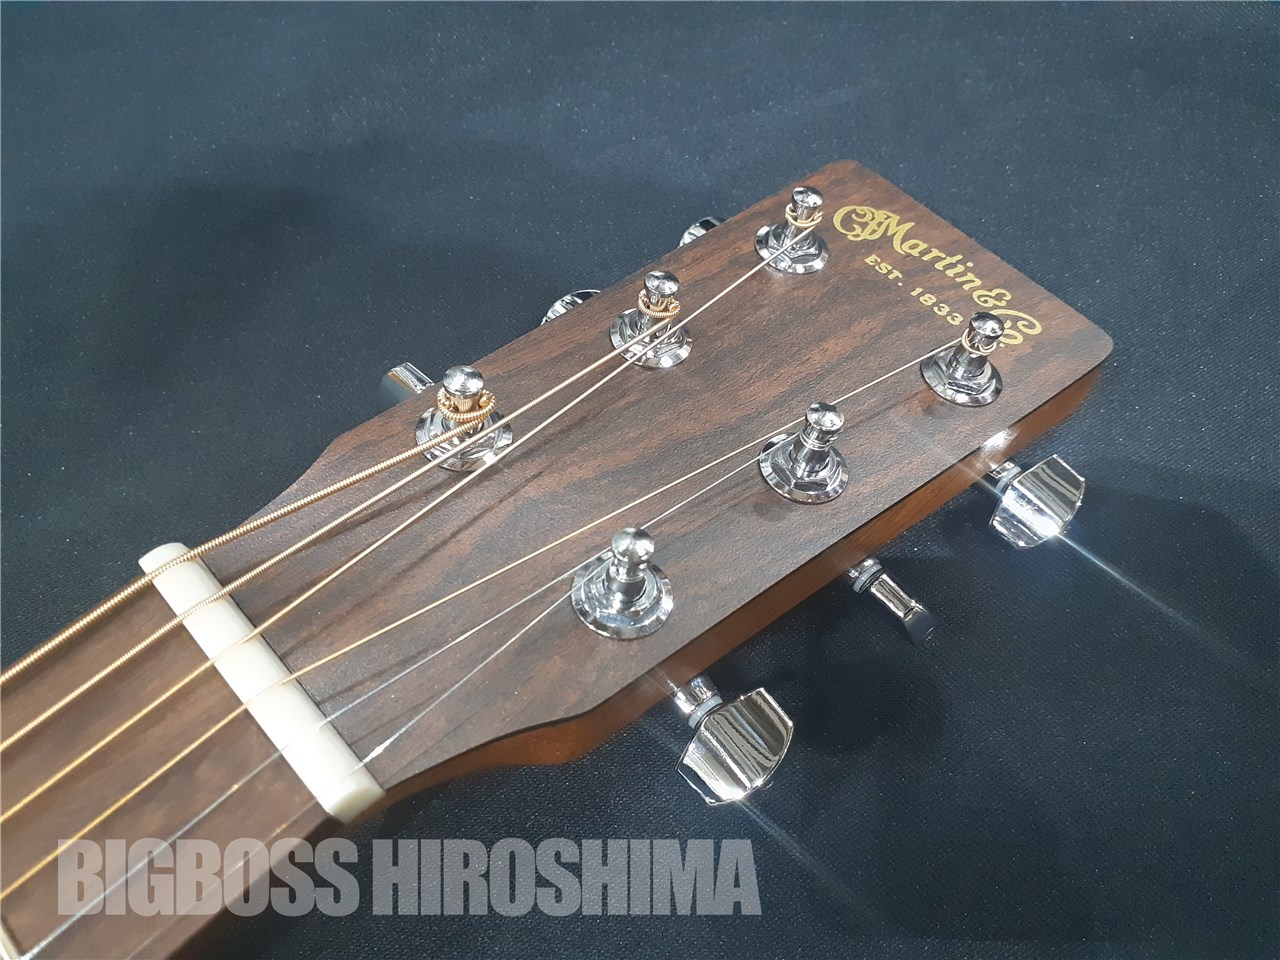 【即納可能】Martin マーチン 000-X2E-01 Sit-Mah (エレクトリック・アコースティックギター)  広島店